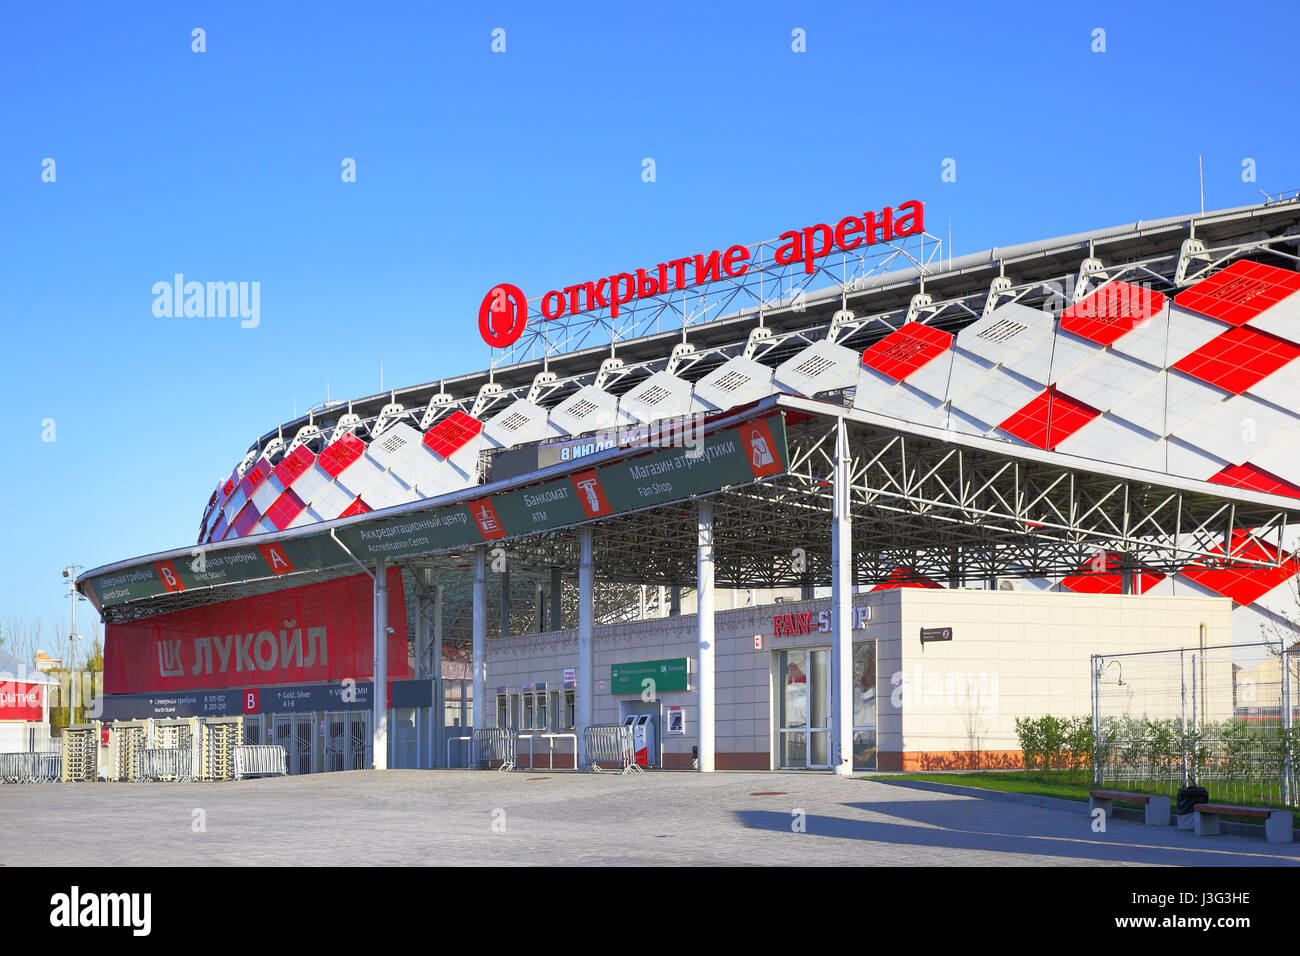 Moskau, Russland - 3. Mai 2017: Eintrag Otkrytie Arena Stadion (Spartak-Stadion) in Moskau Stockfoto